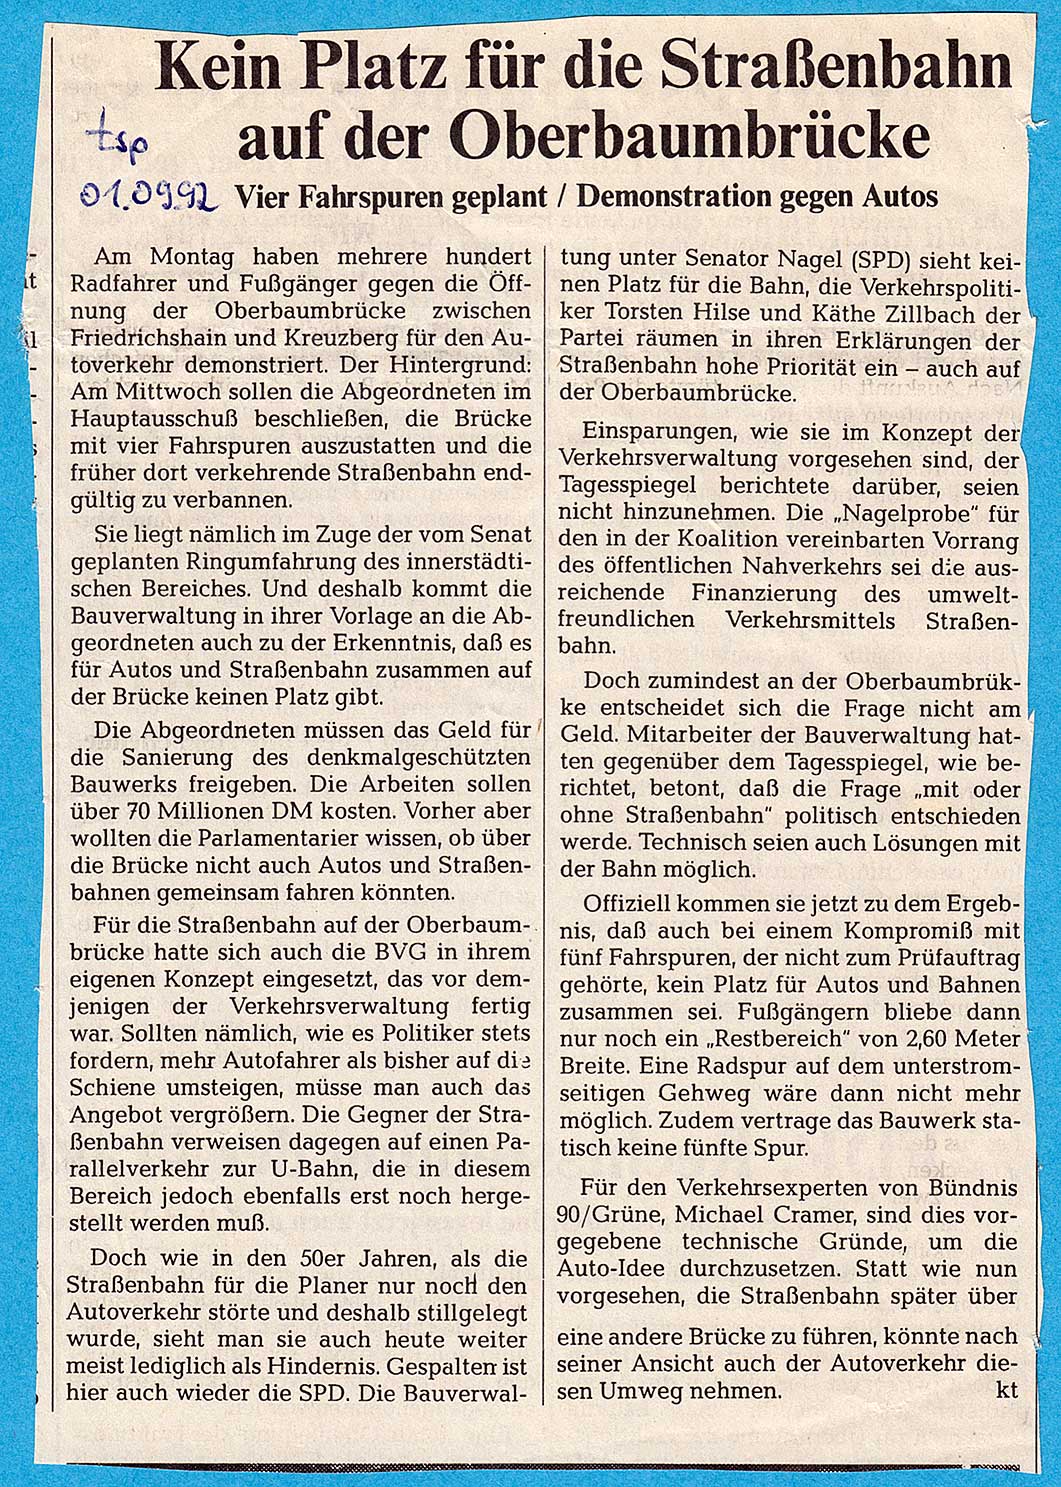 Scan des Tagesspiegelkommentars vom 01.09.1992 zur Straßenbahn über die Oberbaumbrücke.